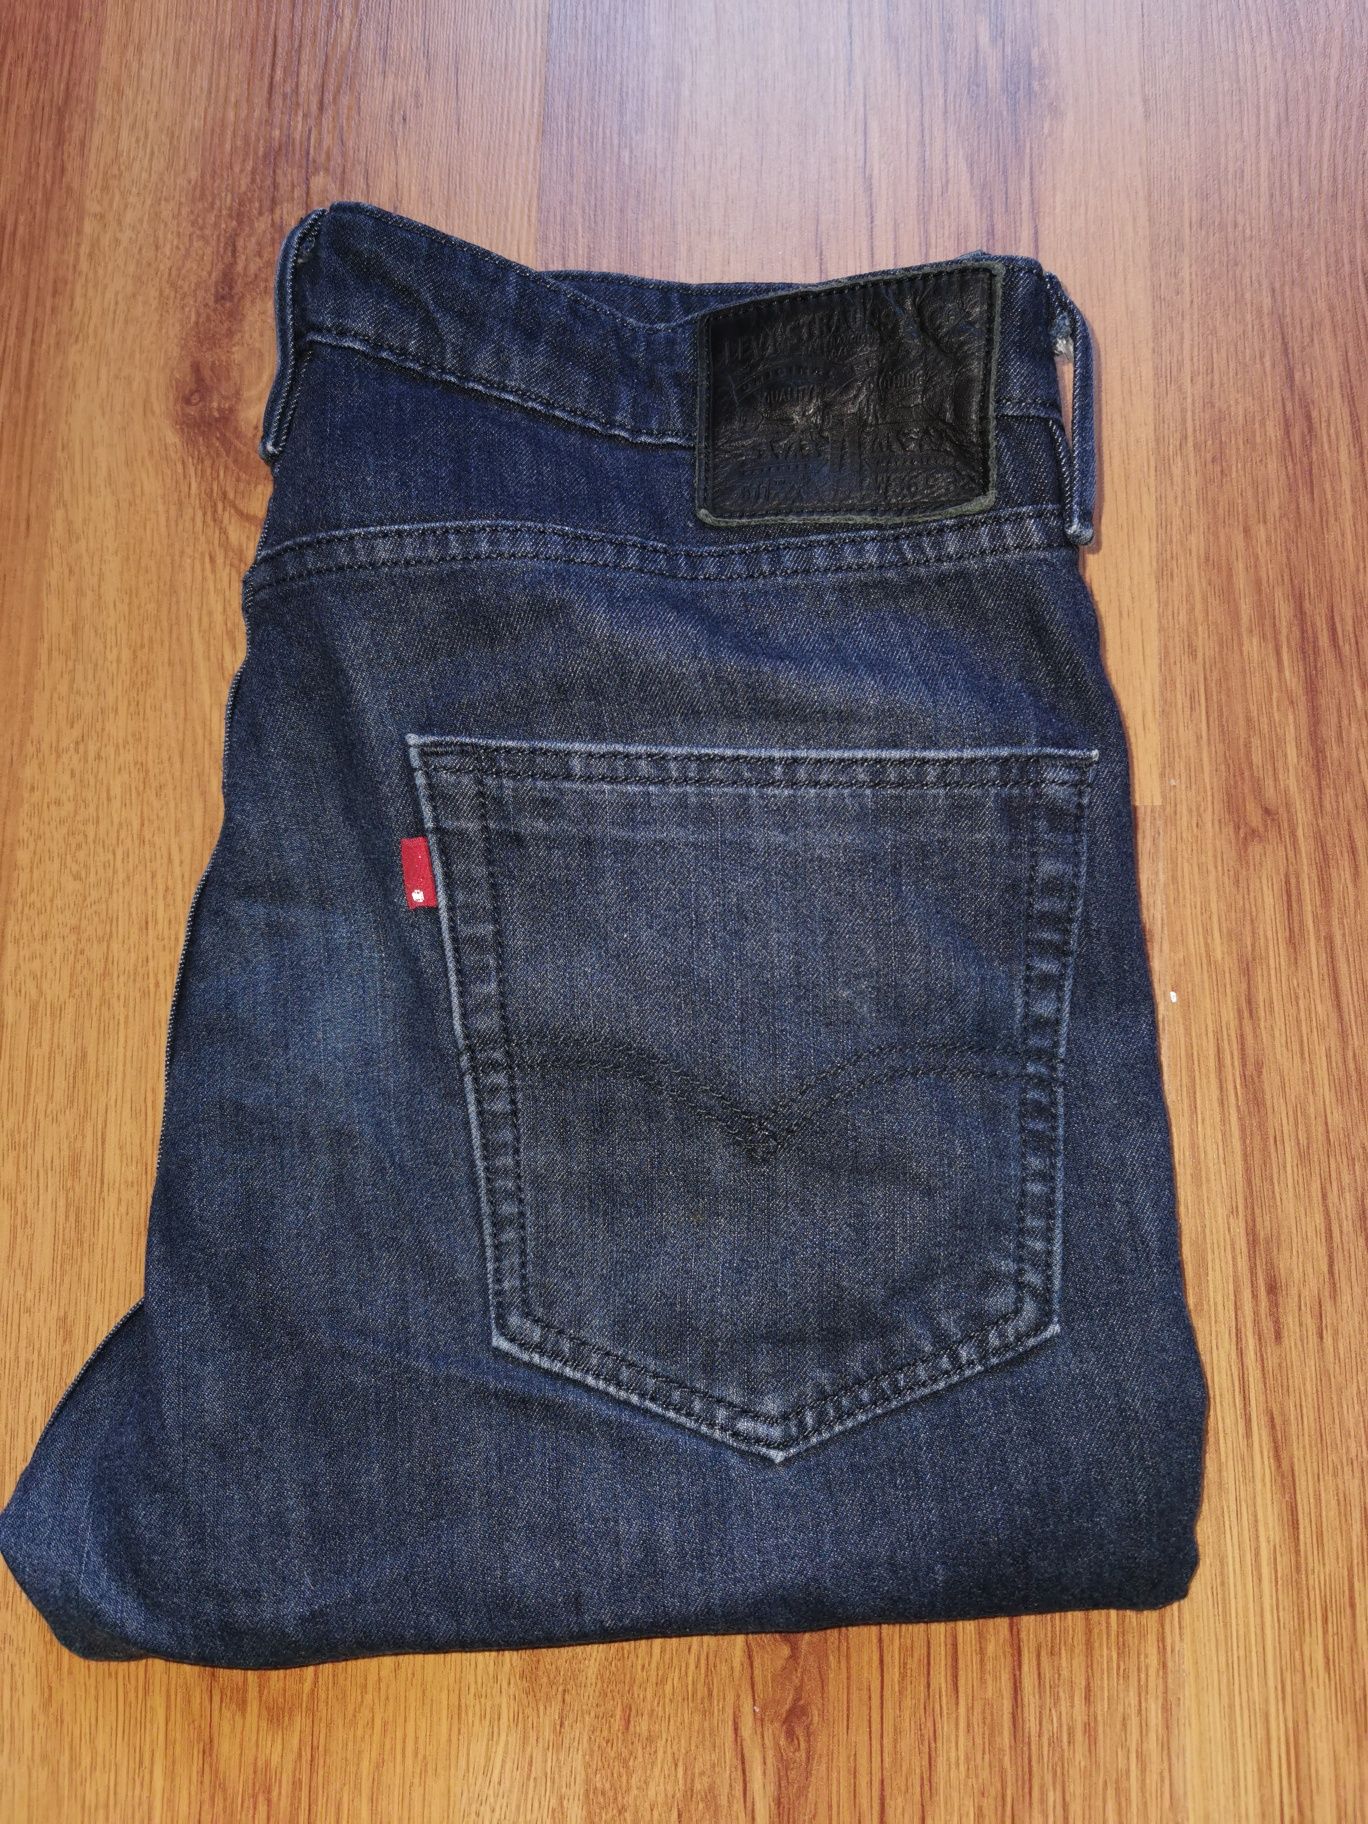 Levi's 511 Commuter Cordura W36 L32 spodnie jeansowe jeansy Levis